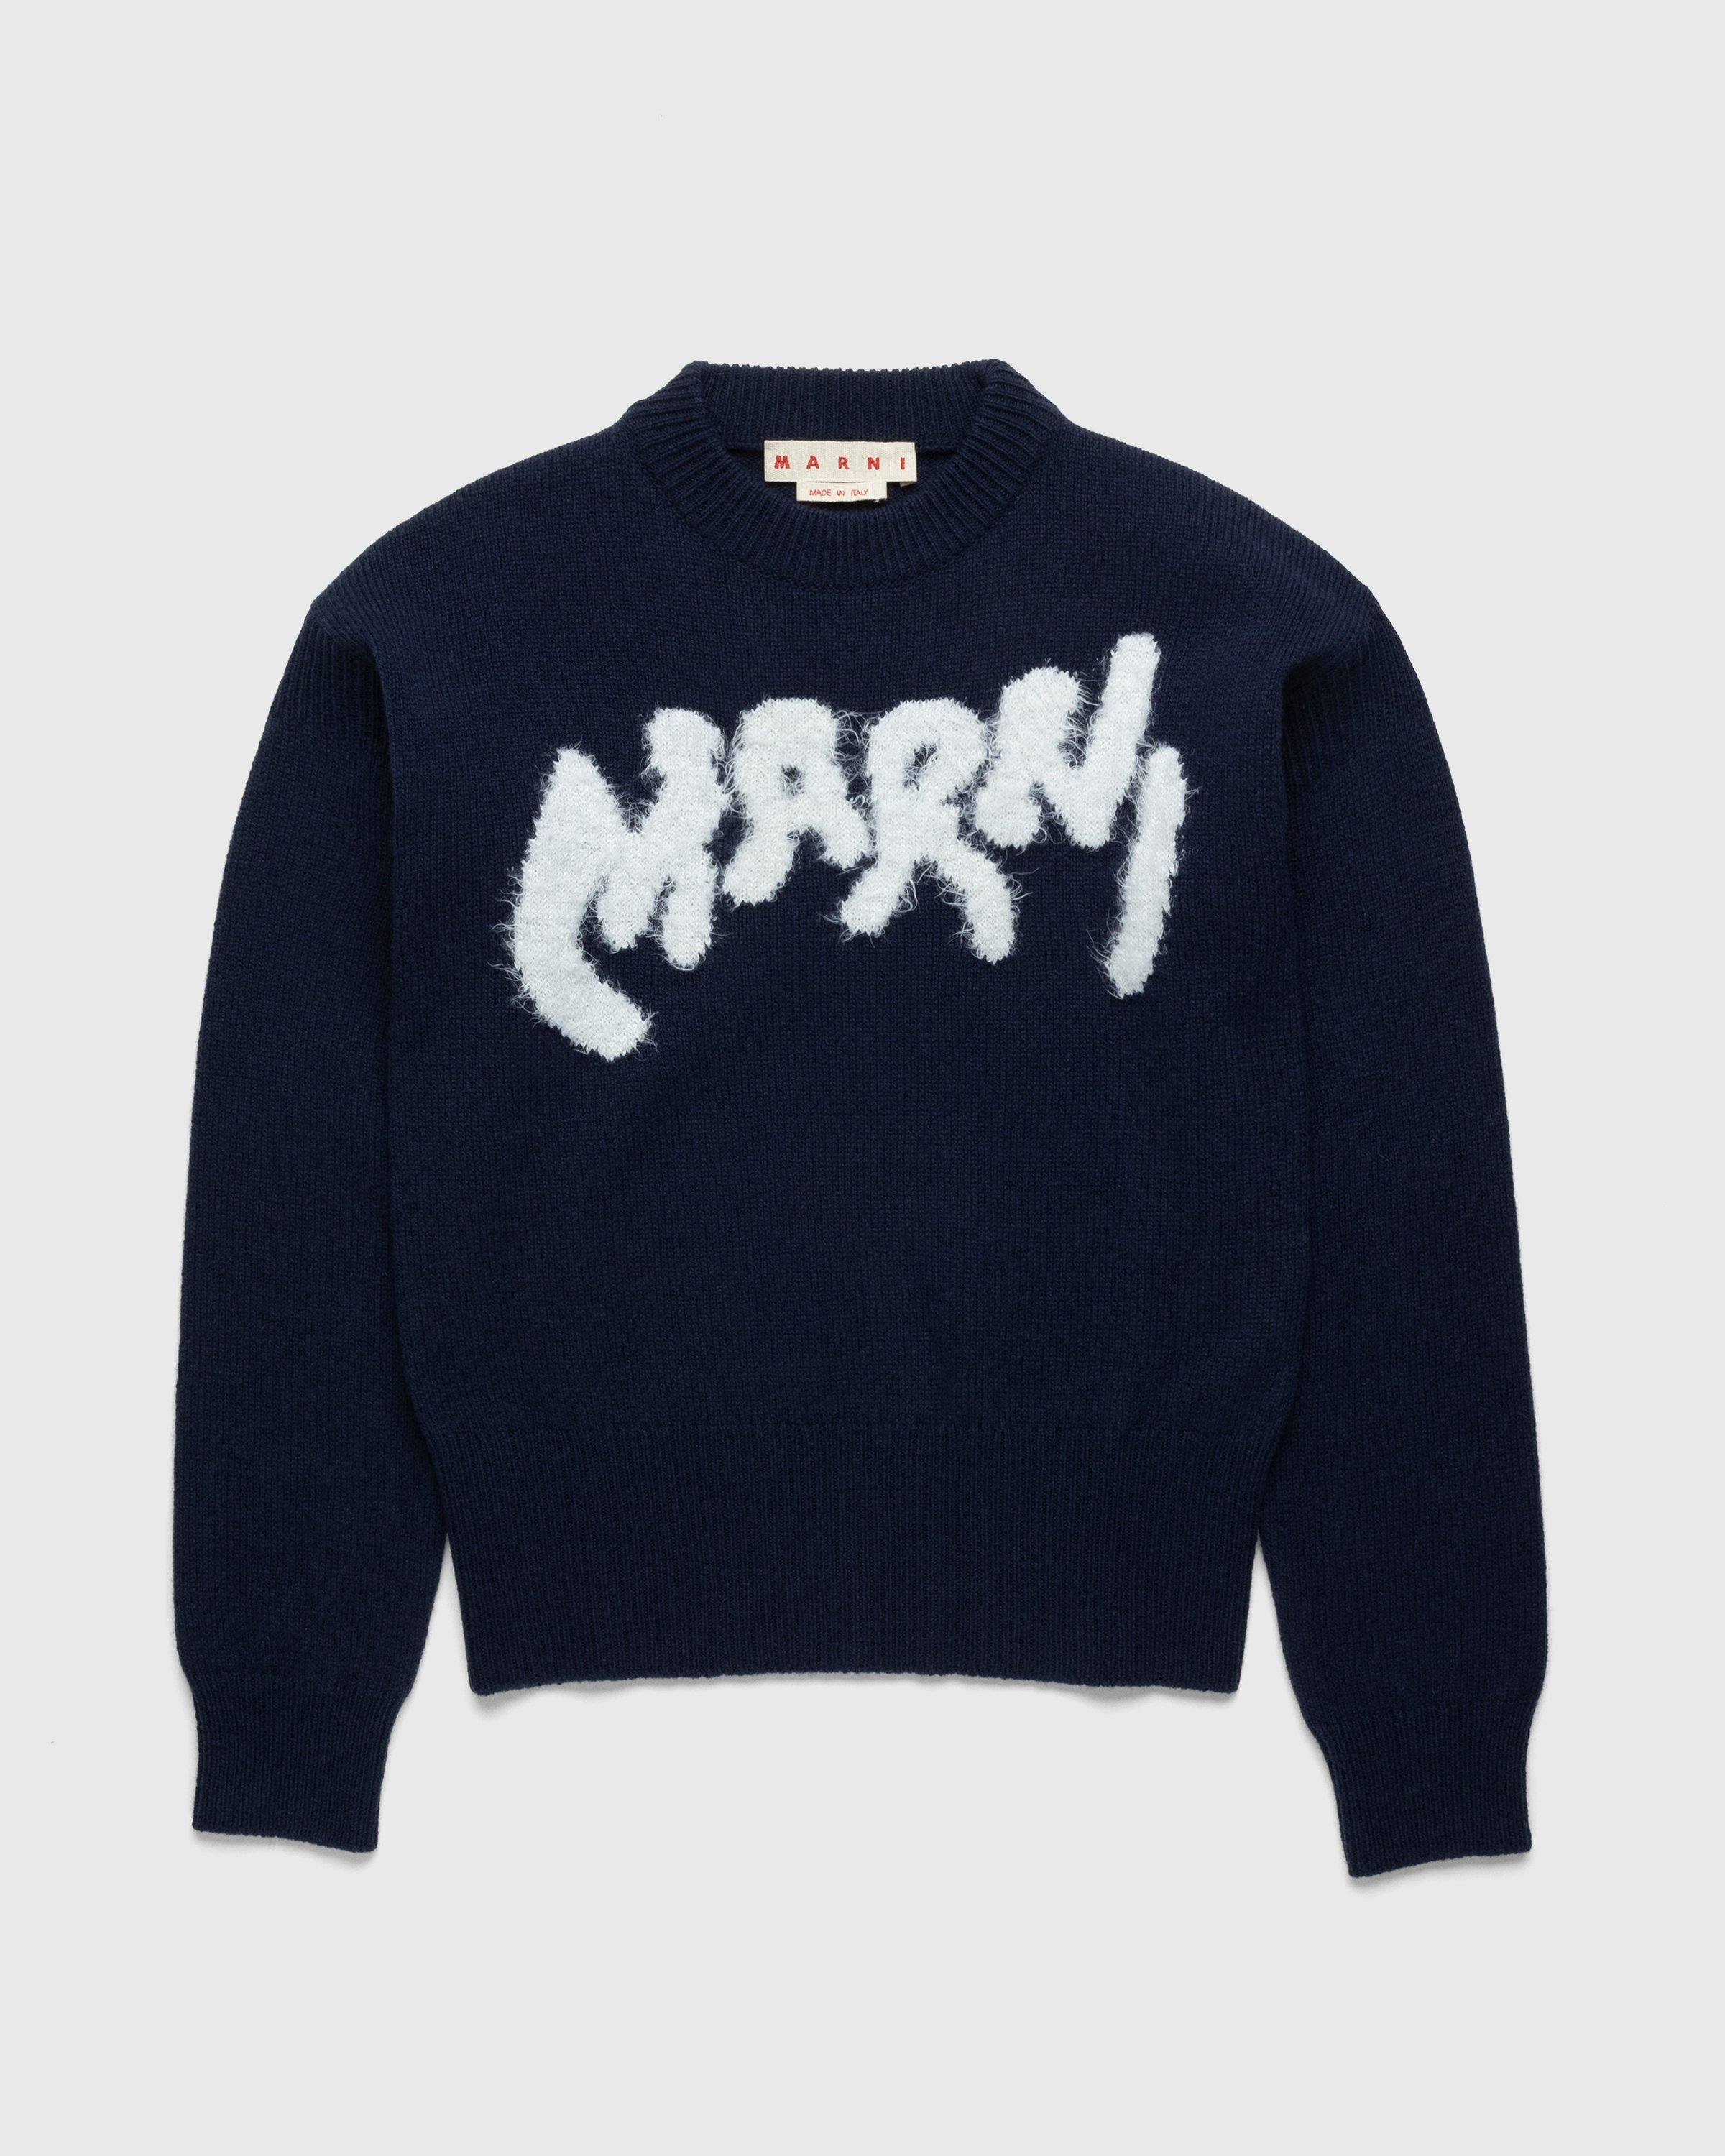 Marni - Roundneck Sweater - Clothing - Blue - Image 1